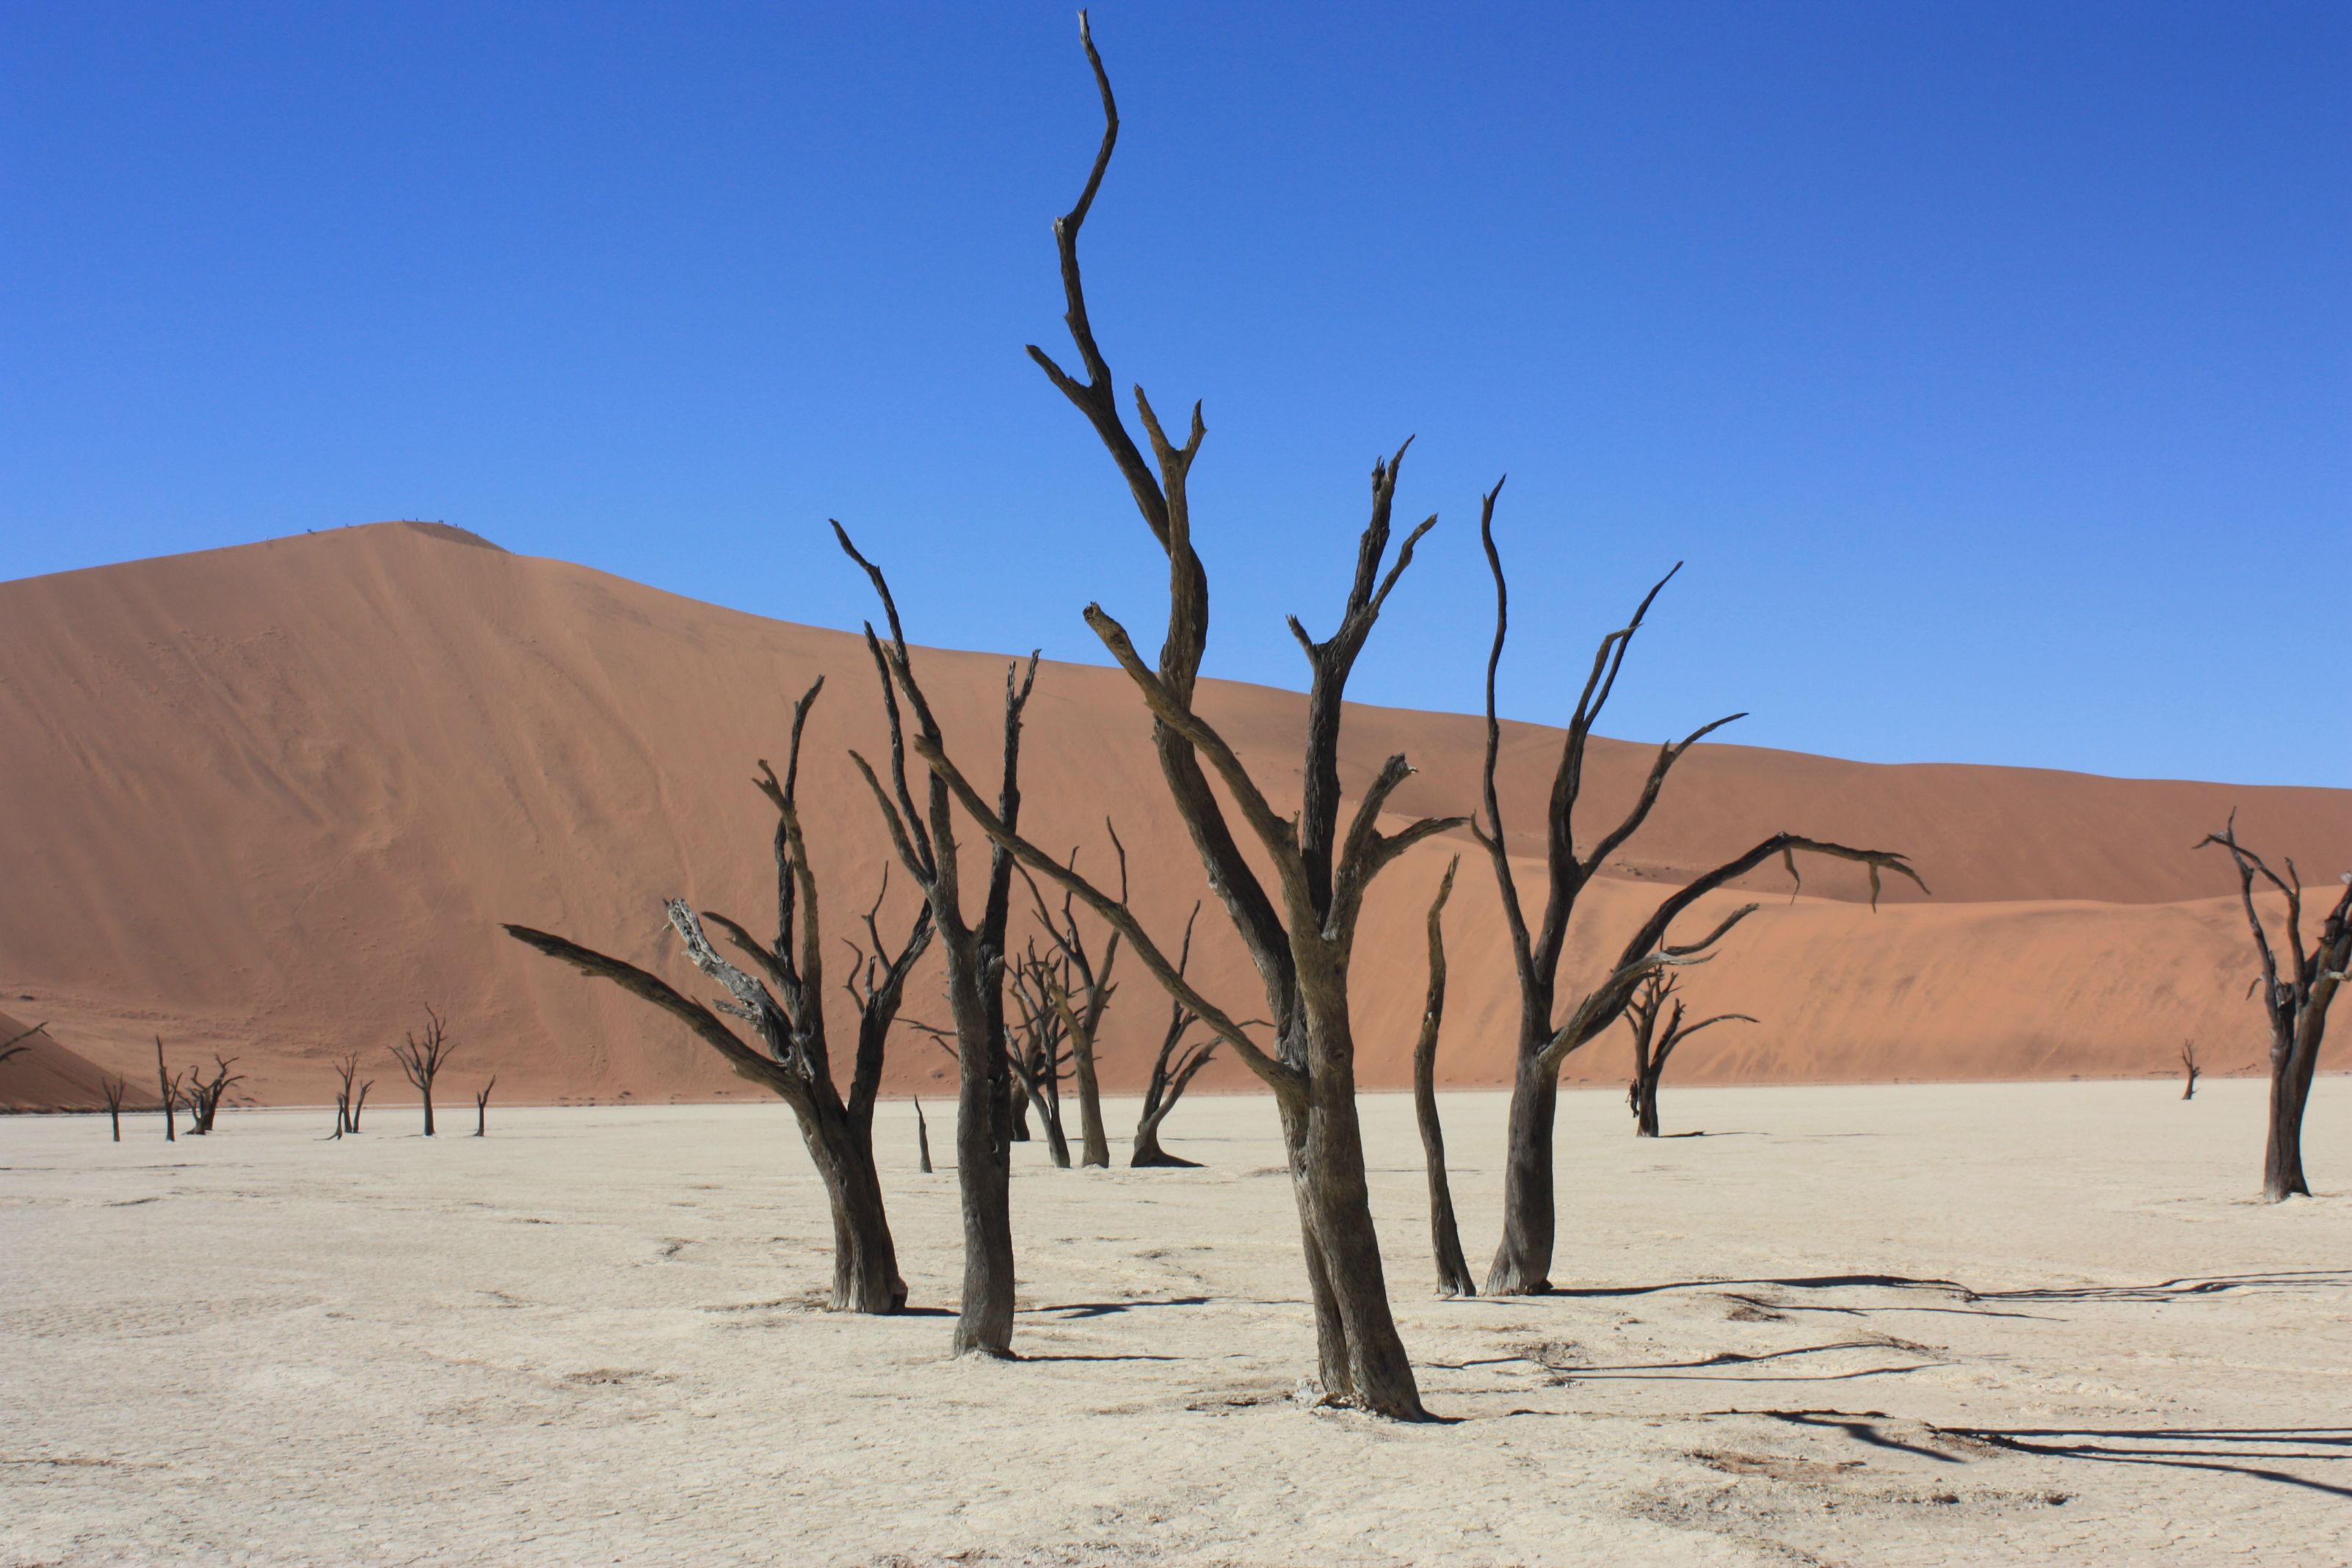 Dead Vlei: Namibias Graveyard of 900-Year-Old Tree Skeletons